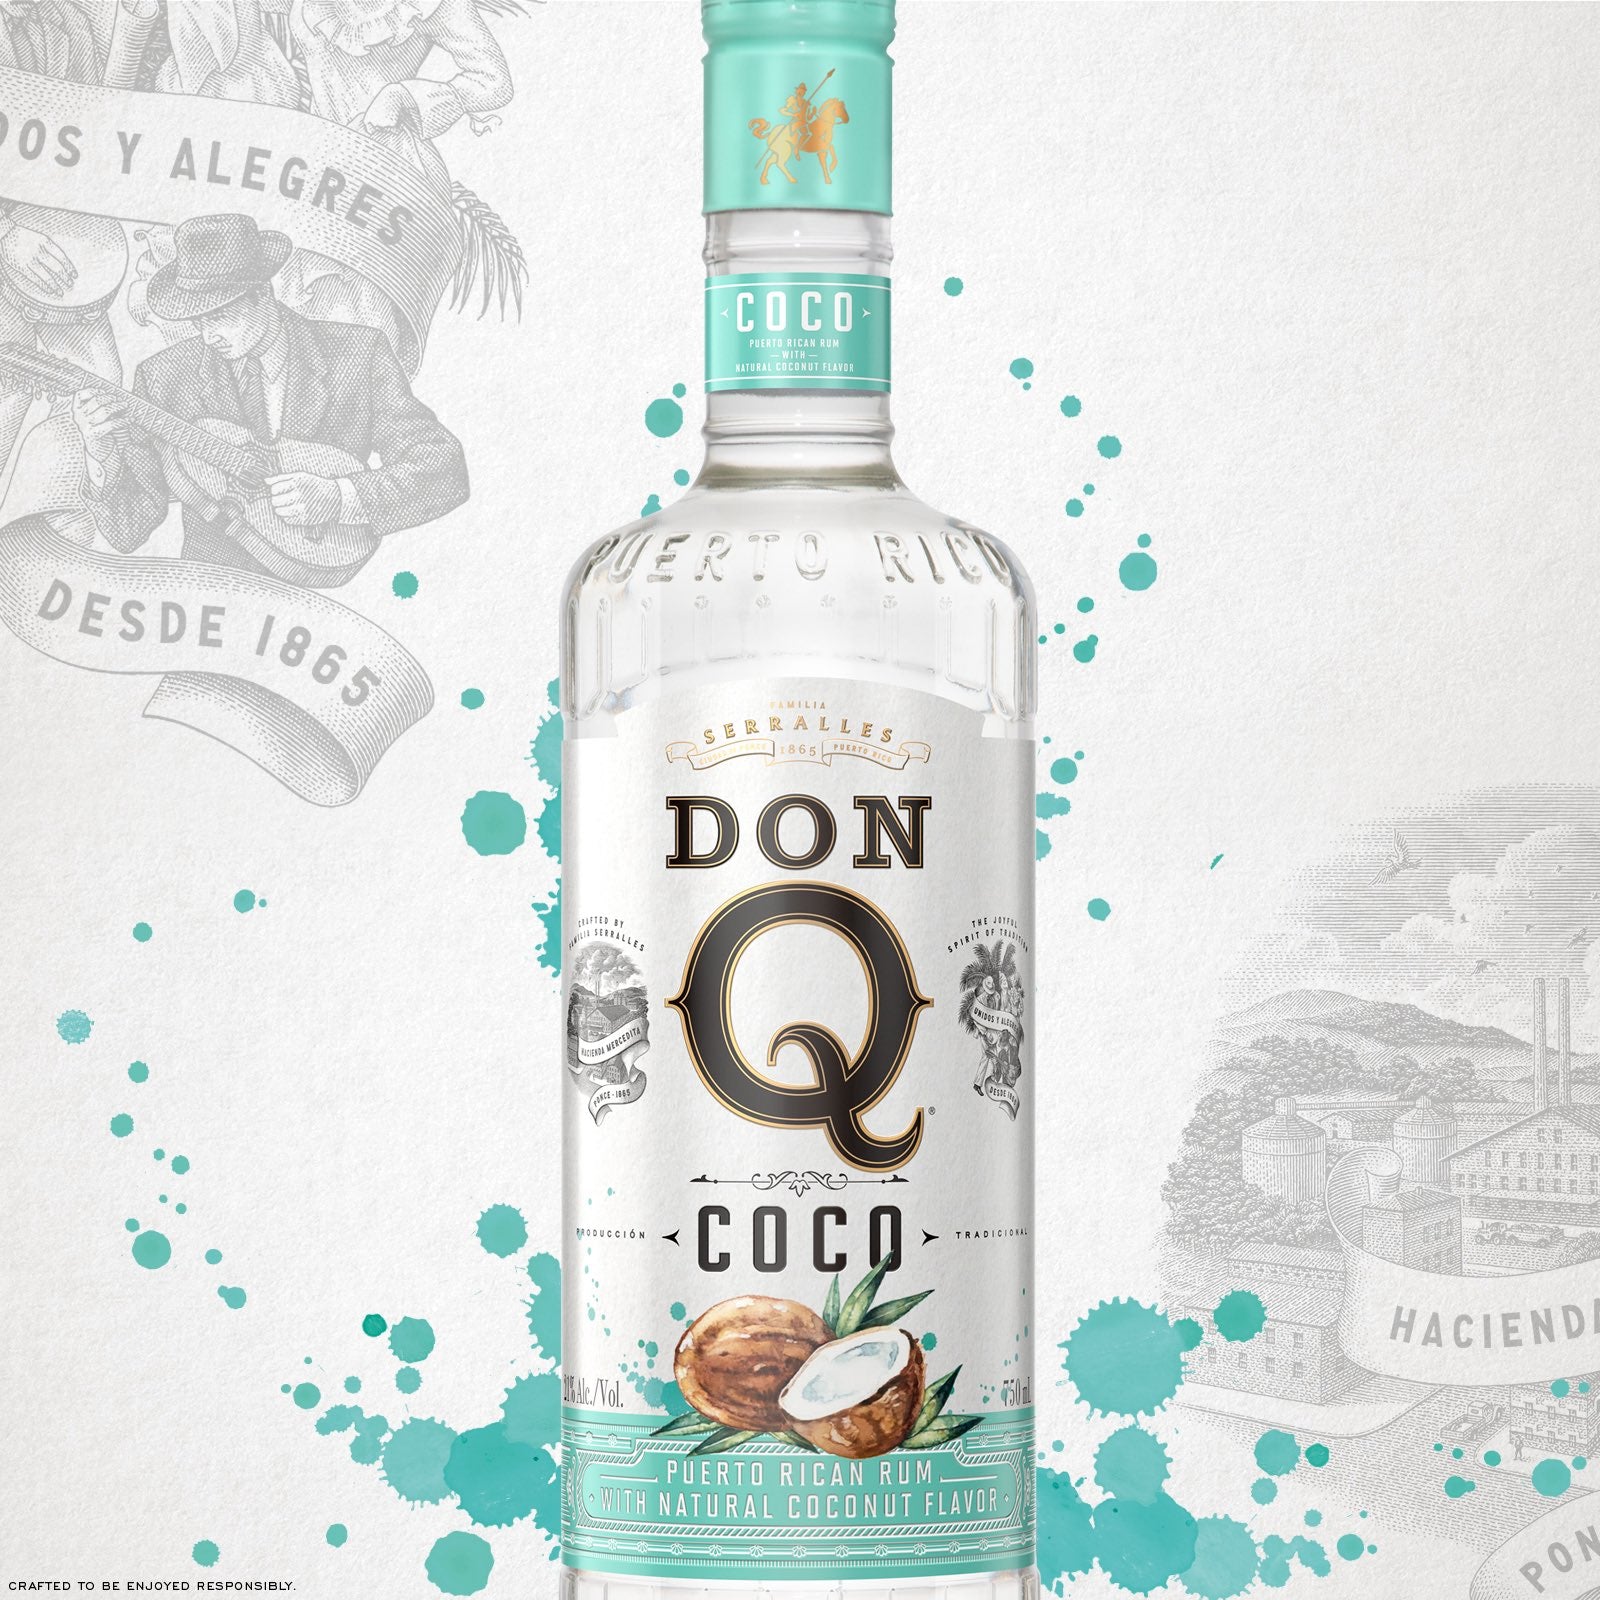 Don Q Coco Rum